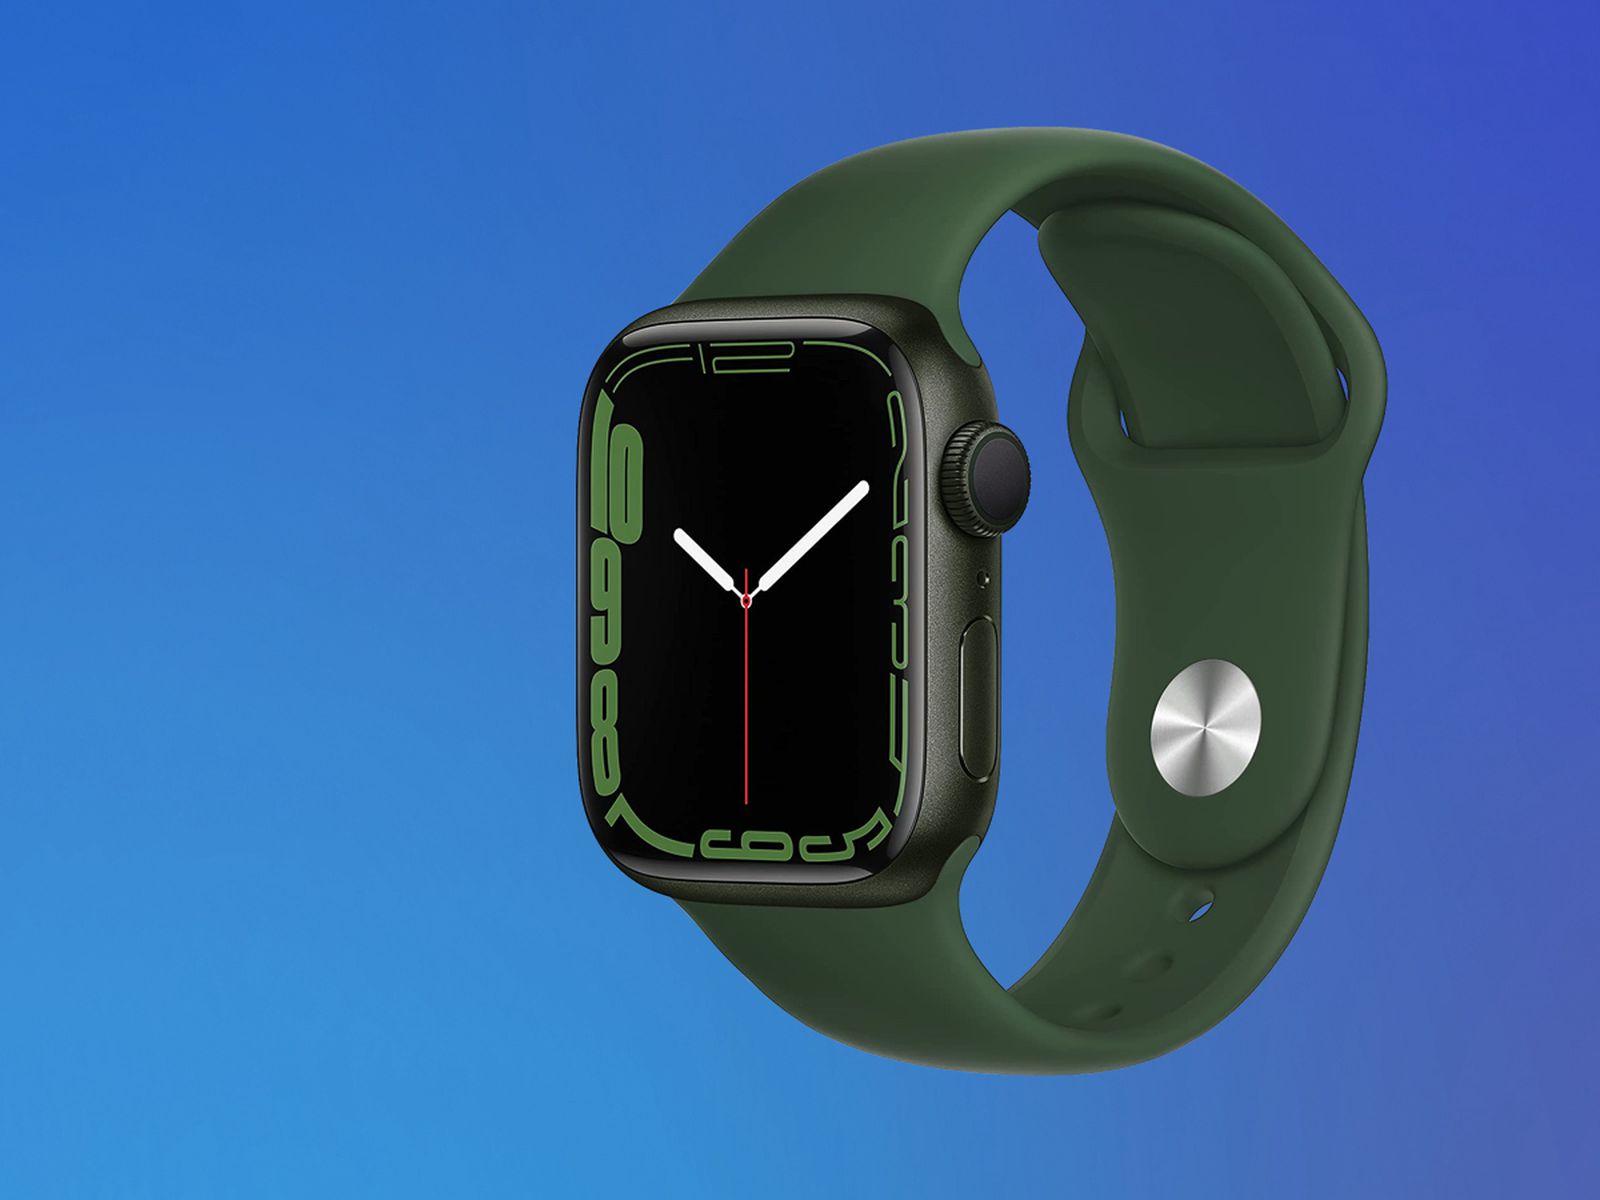 Часы watch 7 45mm. Apple IWATCH 7 зеленые. Часы эпл вотч 7. Эйпл воч 7 скриес зеленые. Apple watch 7 41mm.